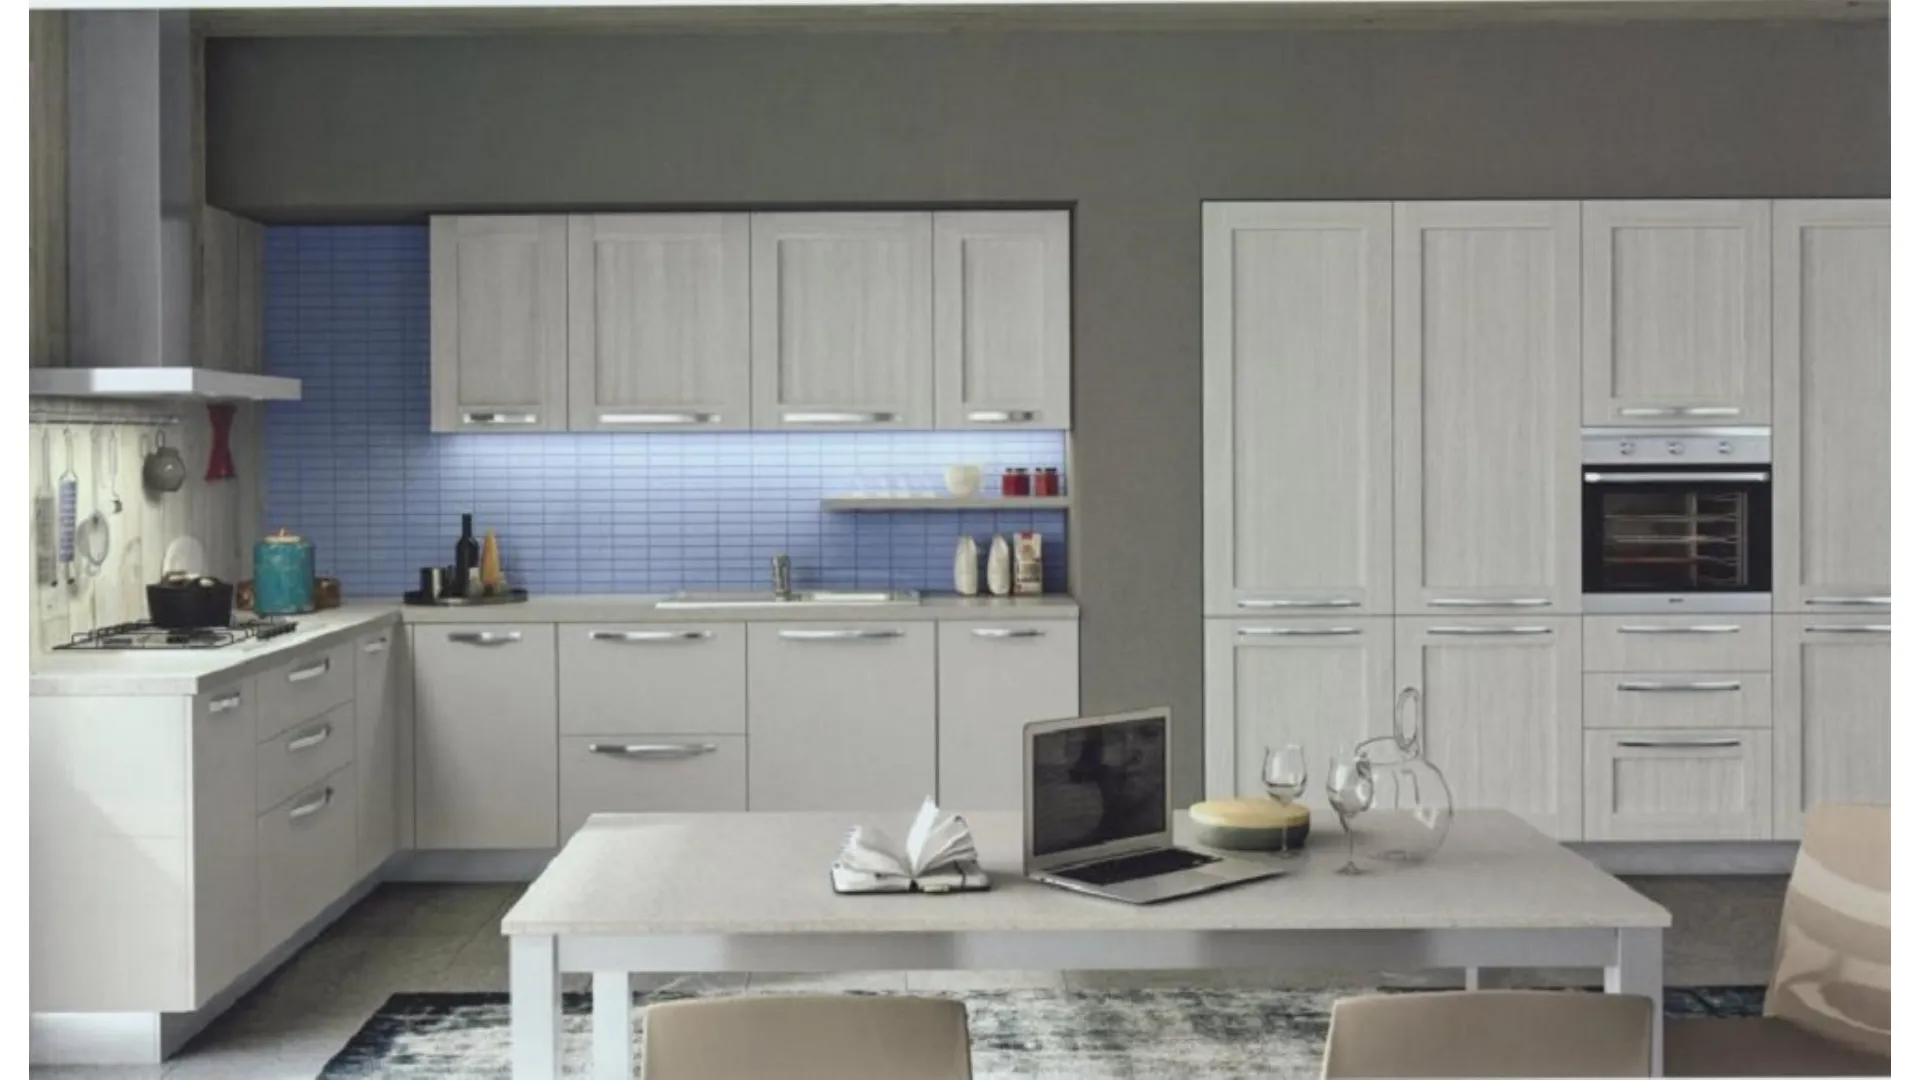 Modern corner kitchen with built-in appliance columns